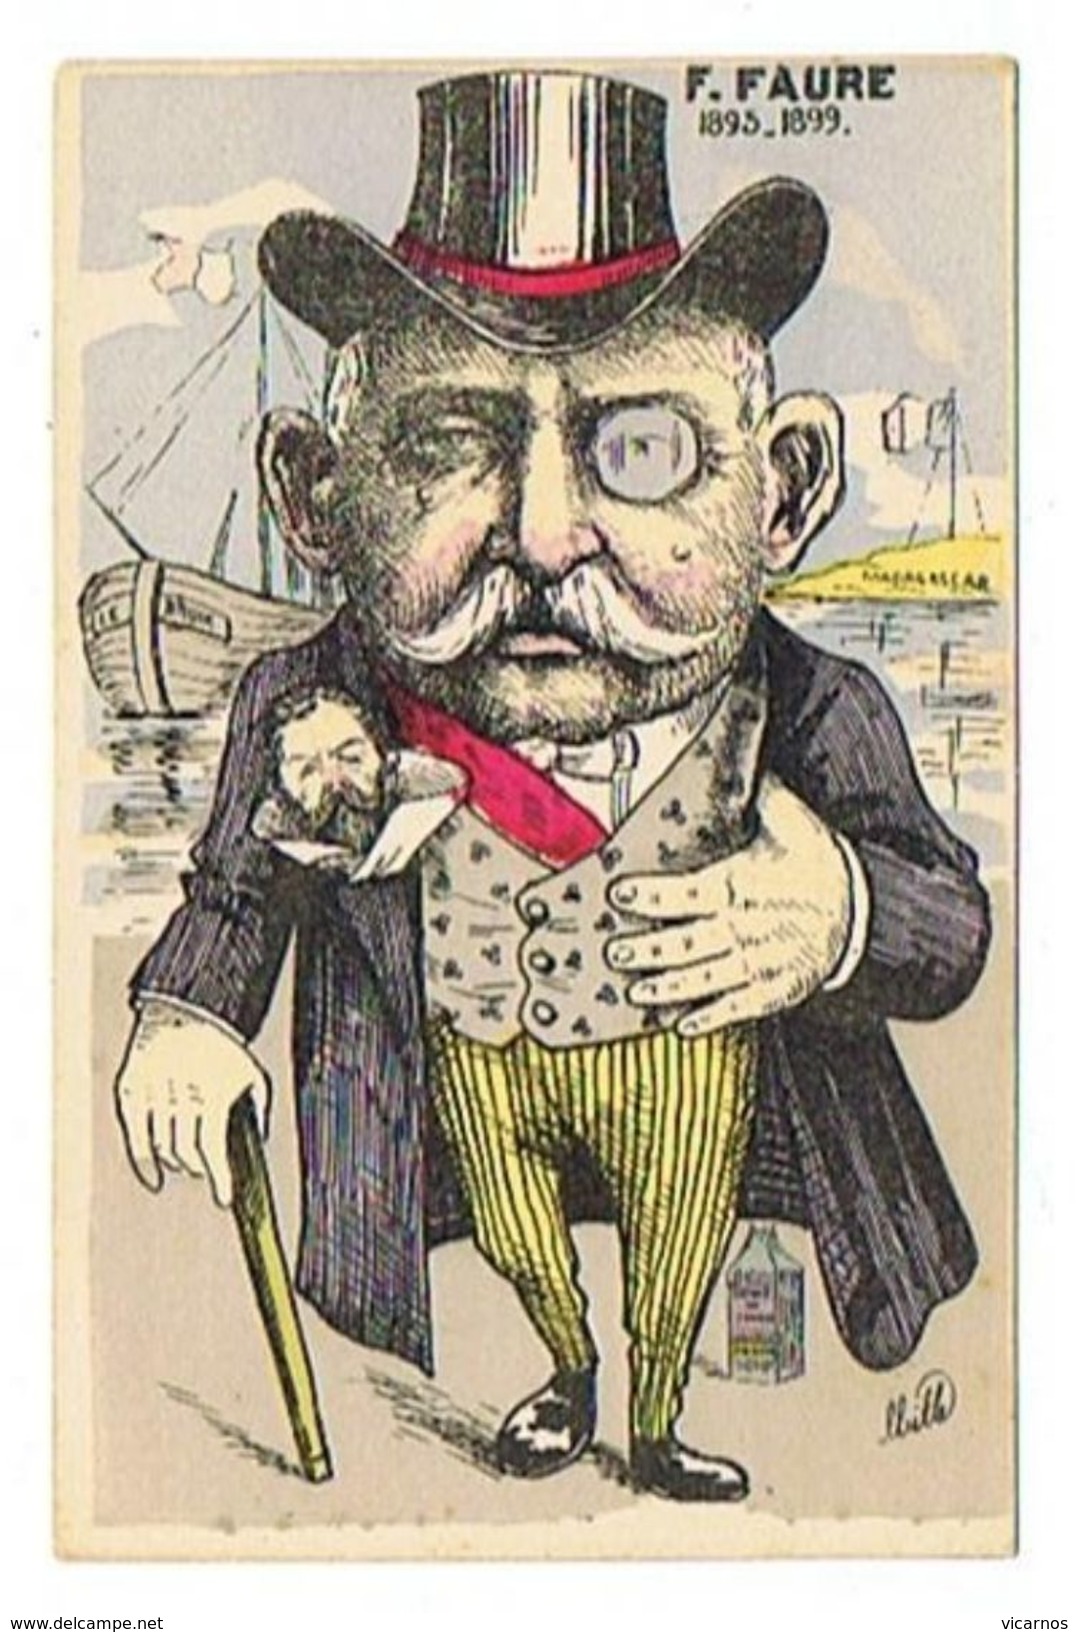 CPA ILLUSTRATEUR MILLE  F. FAURE 1895 1899  Caricature Politique - Mille